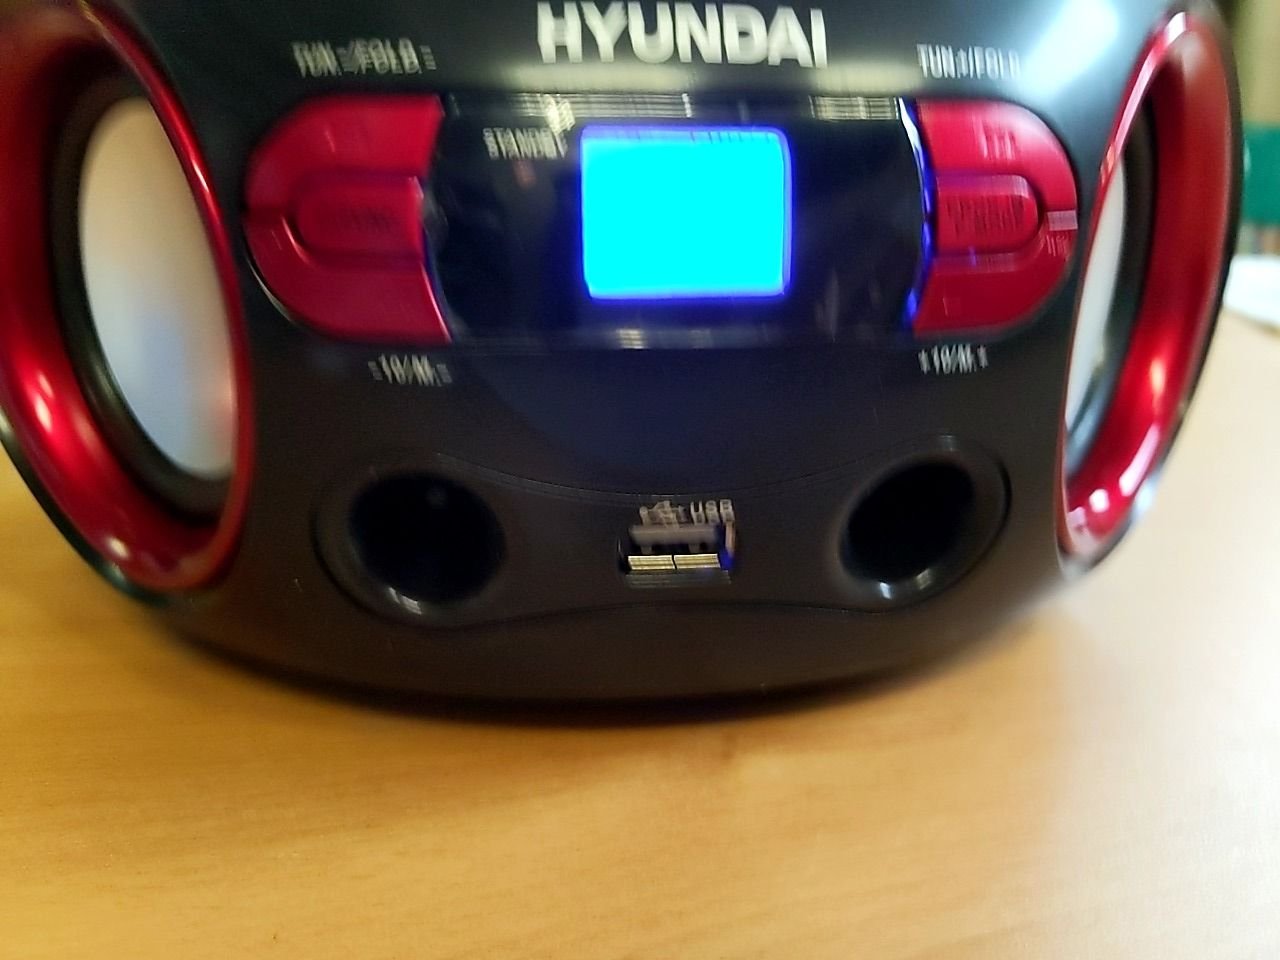 Radiomagnetofon s CD/MP3/USB Hyundai TRC 533 AU3